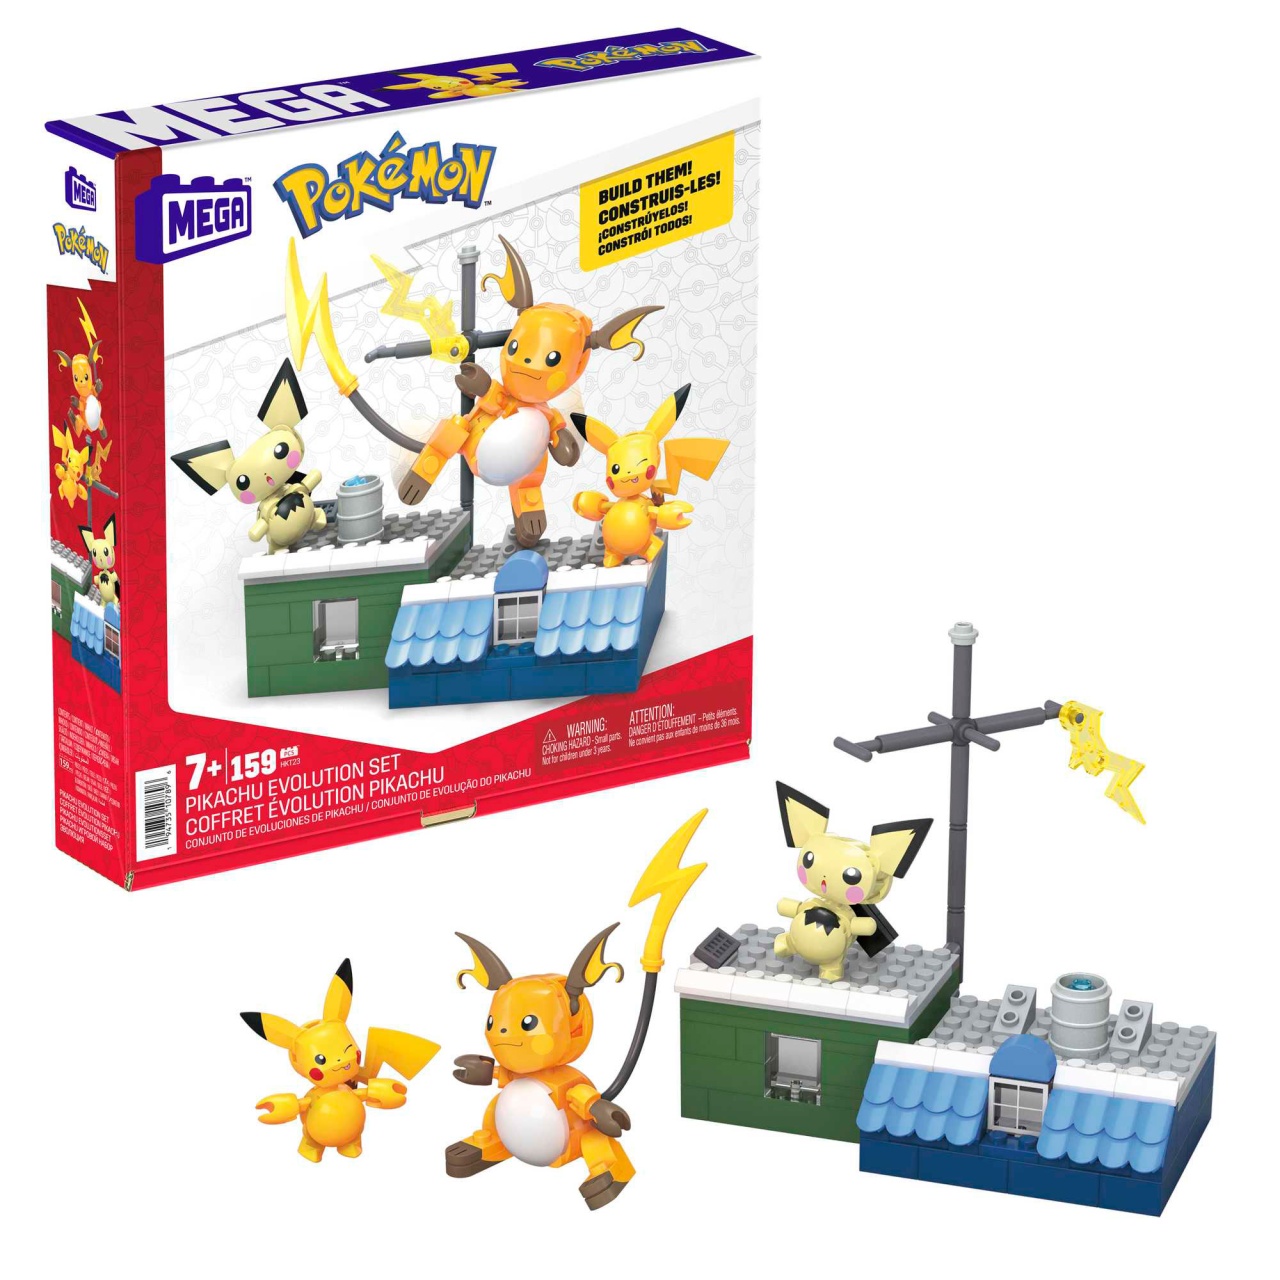 MEGA Pokemon Pikachu Evolution Set von Mattel